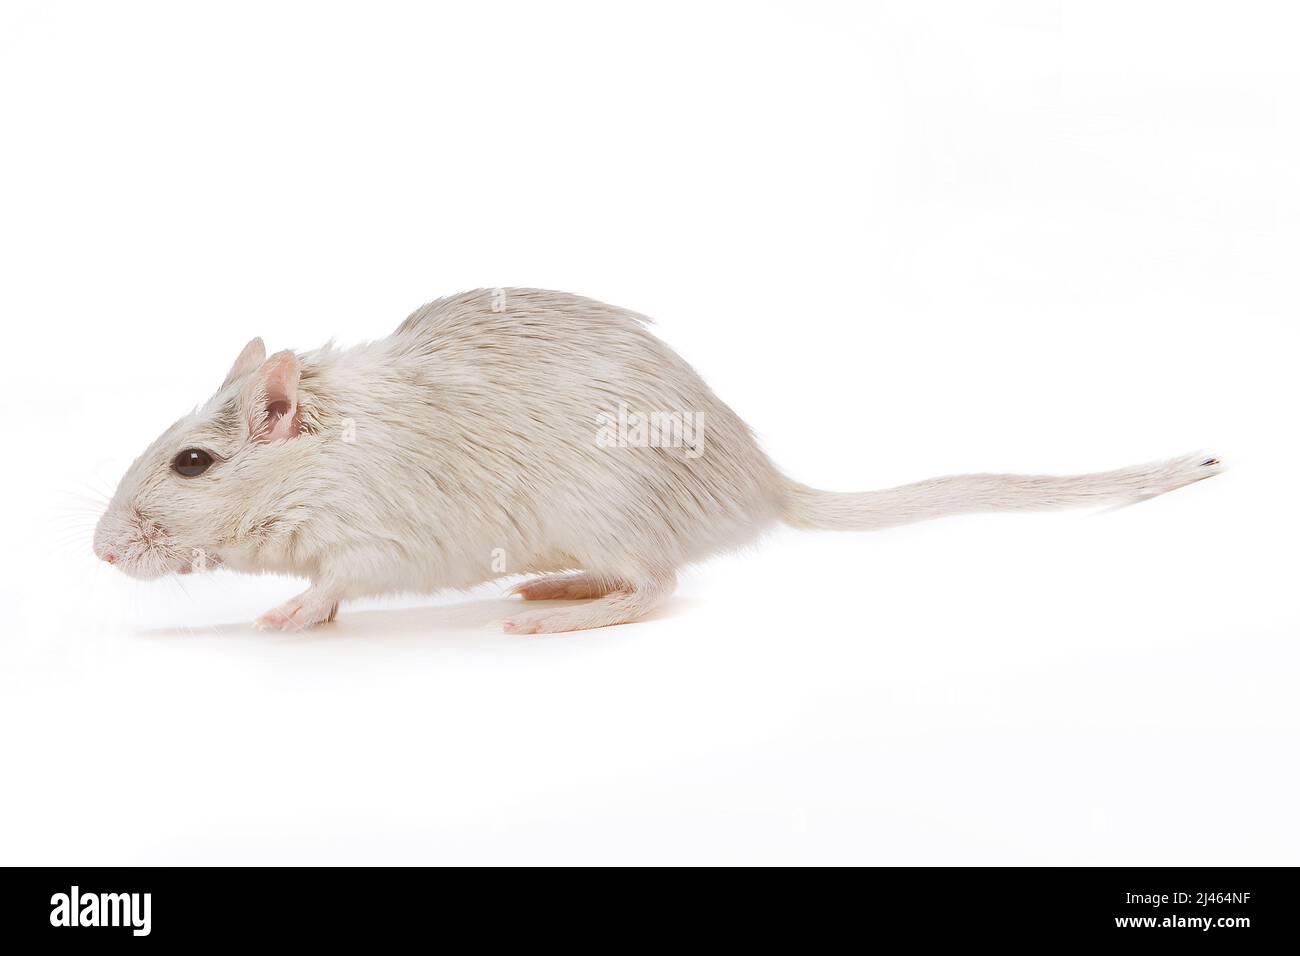 Petit rat gerbil blanc marchant sur un fond blanc Banque D'Images